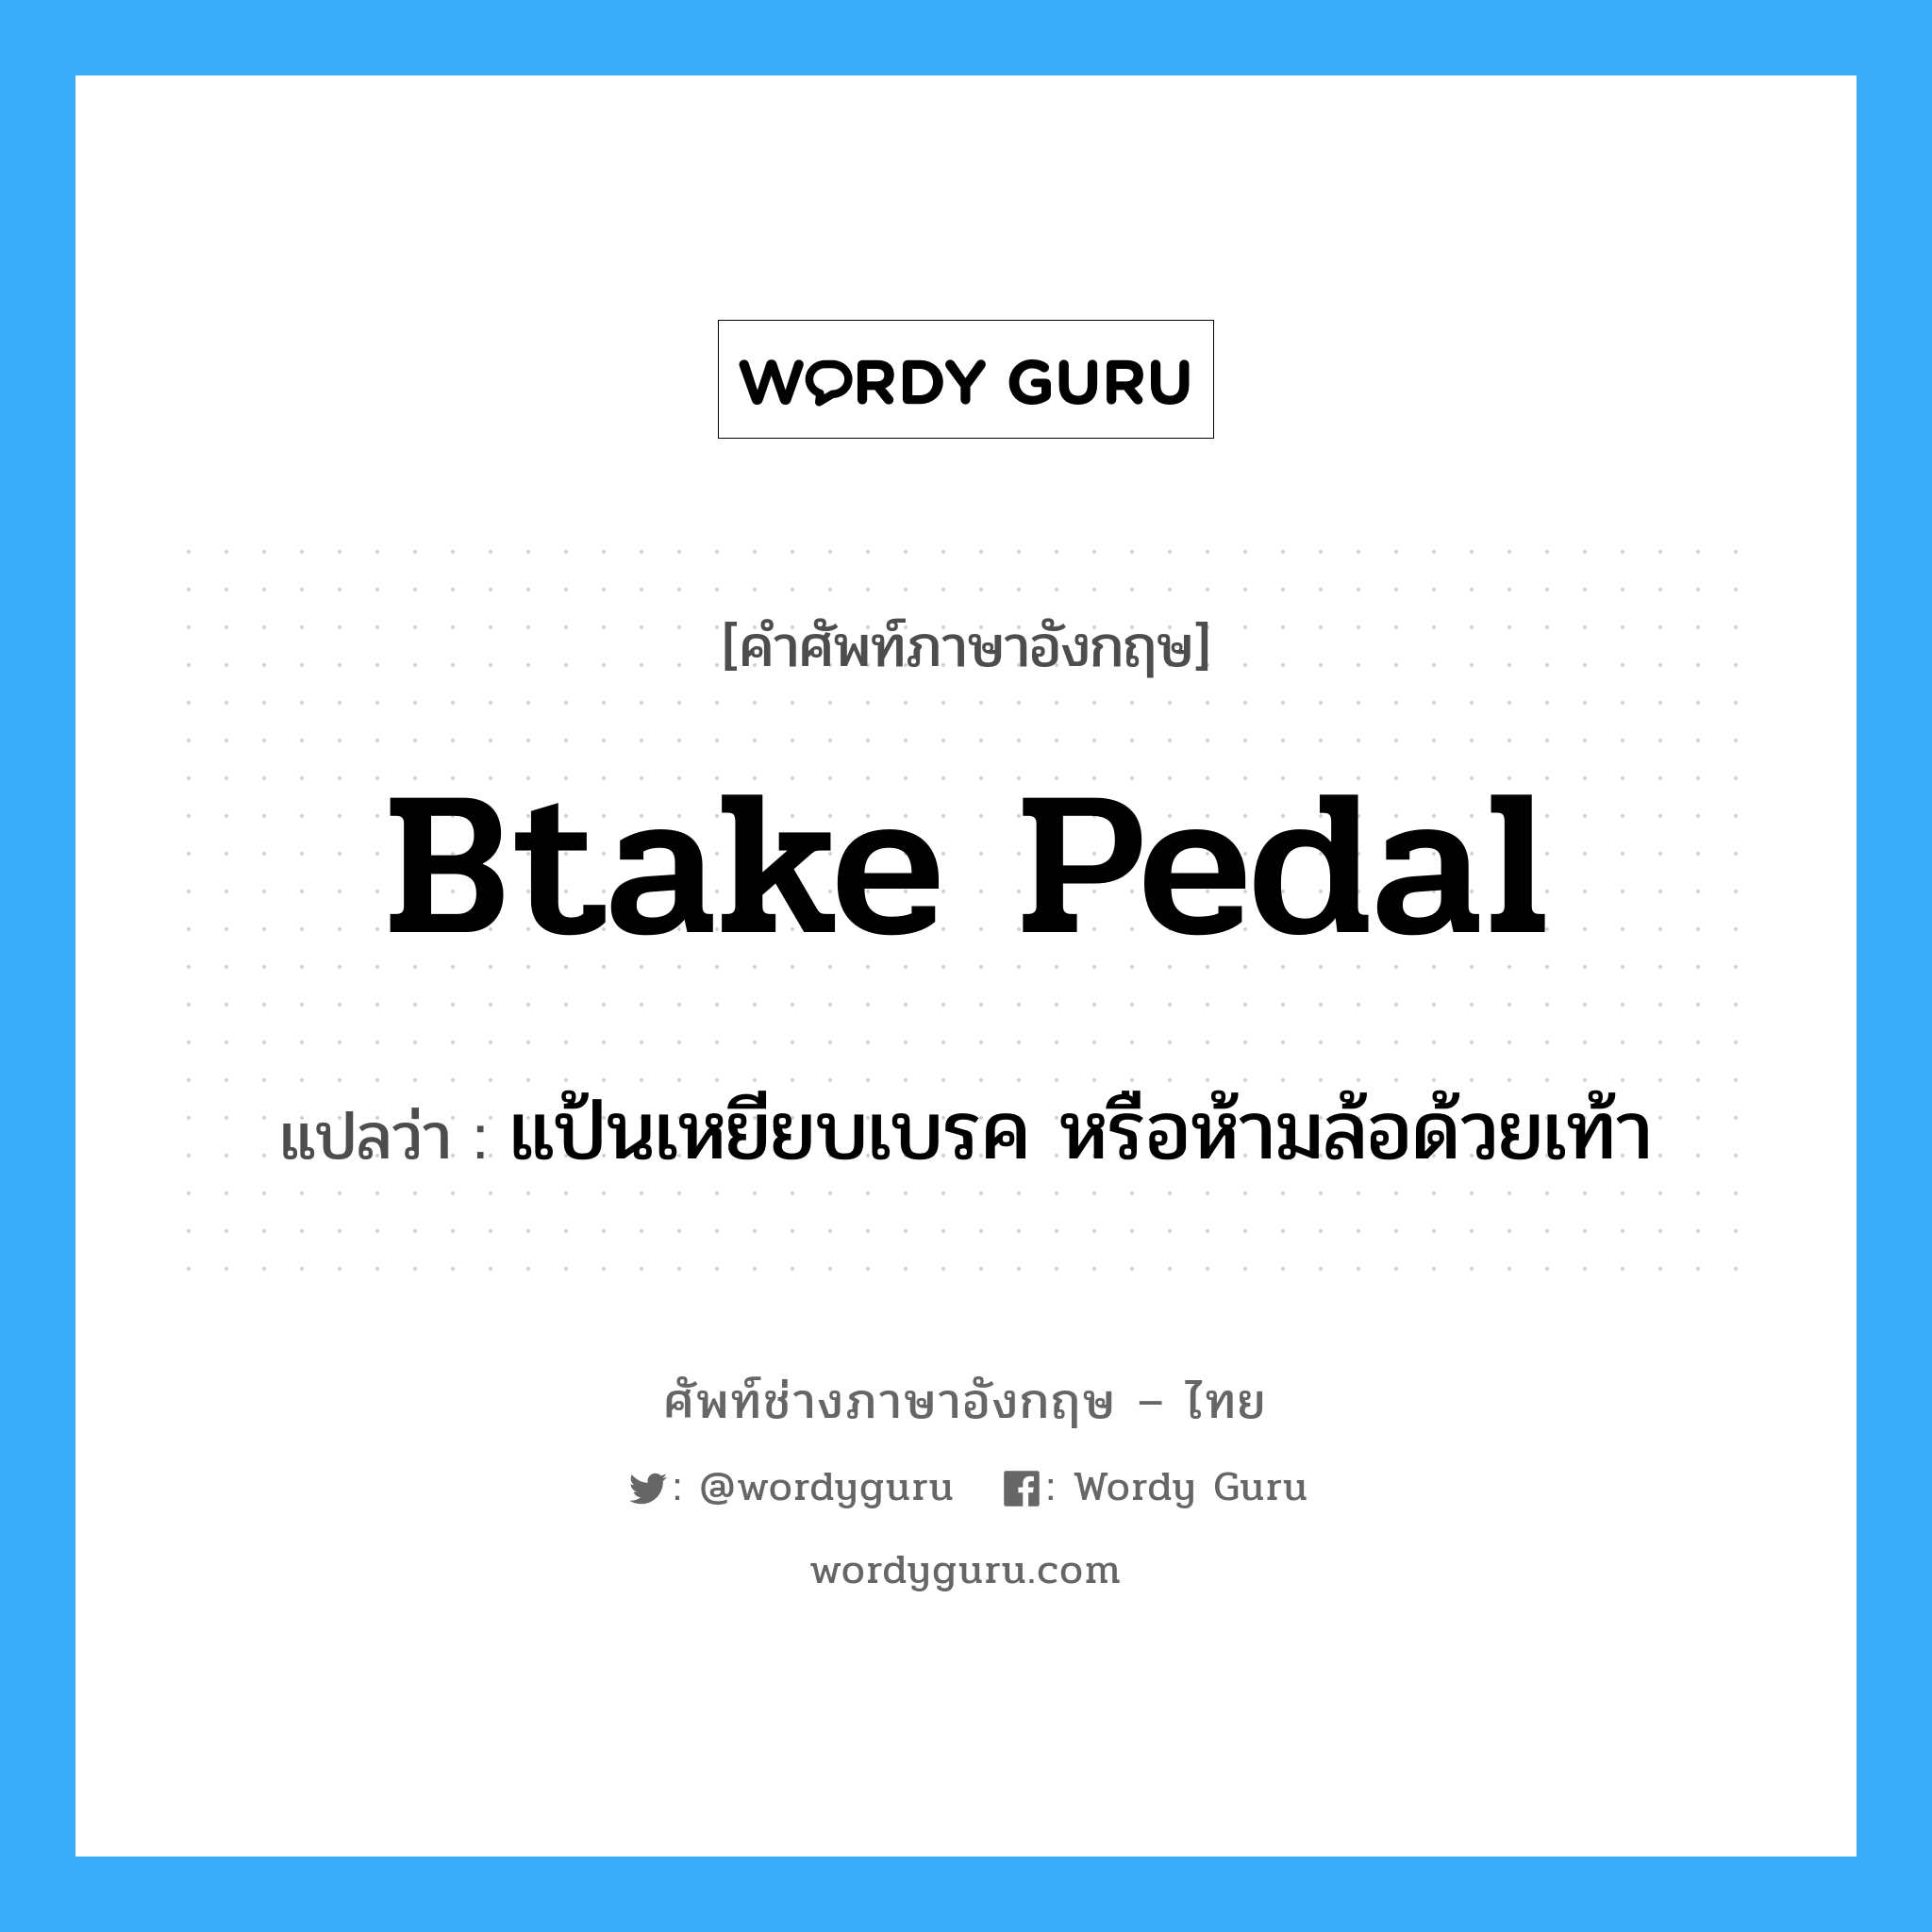 btake pedal แปลว่า?, คำศัพท์ช่างภาษาอังกฤษ - ไทย btake pedal คำศัพท์ภาษาอังกฤษ btake pedal แปลว่า แป้นเหยียบเบรค หรือห้ามล้อด้วยเท้า